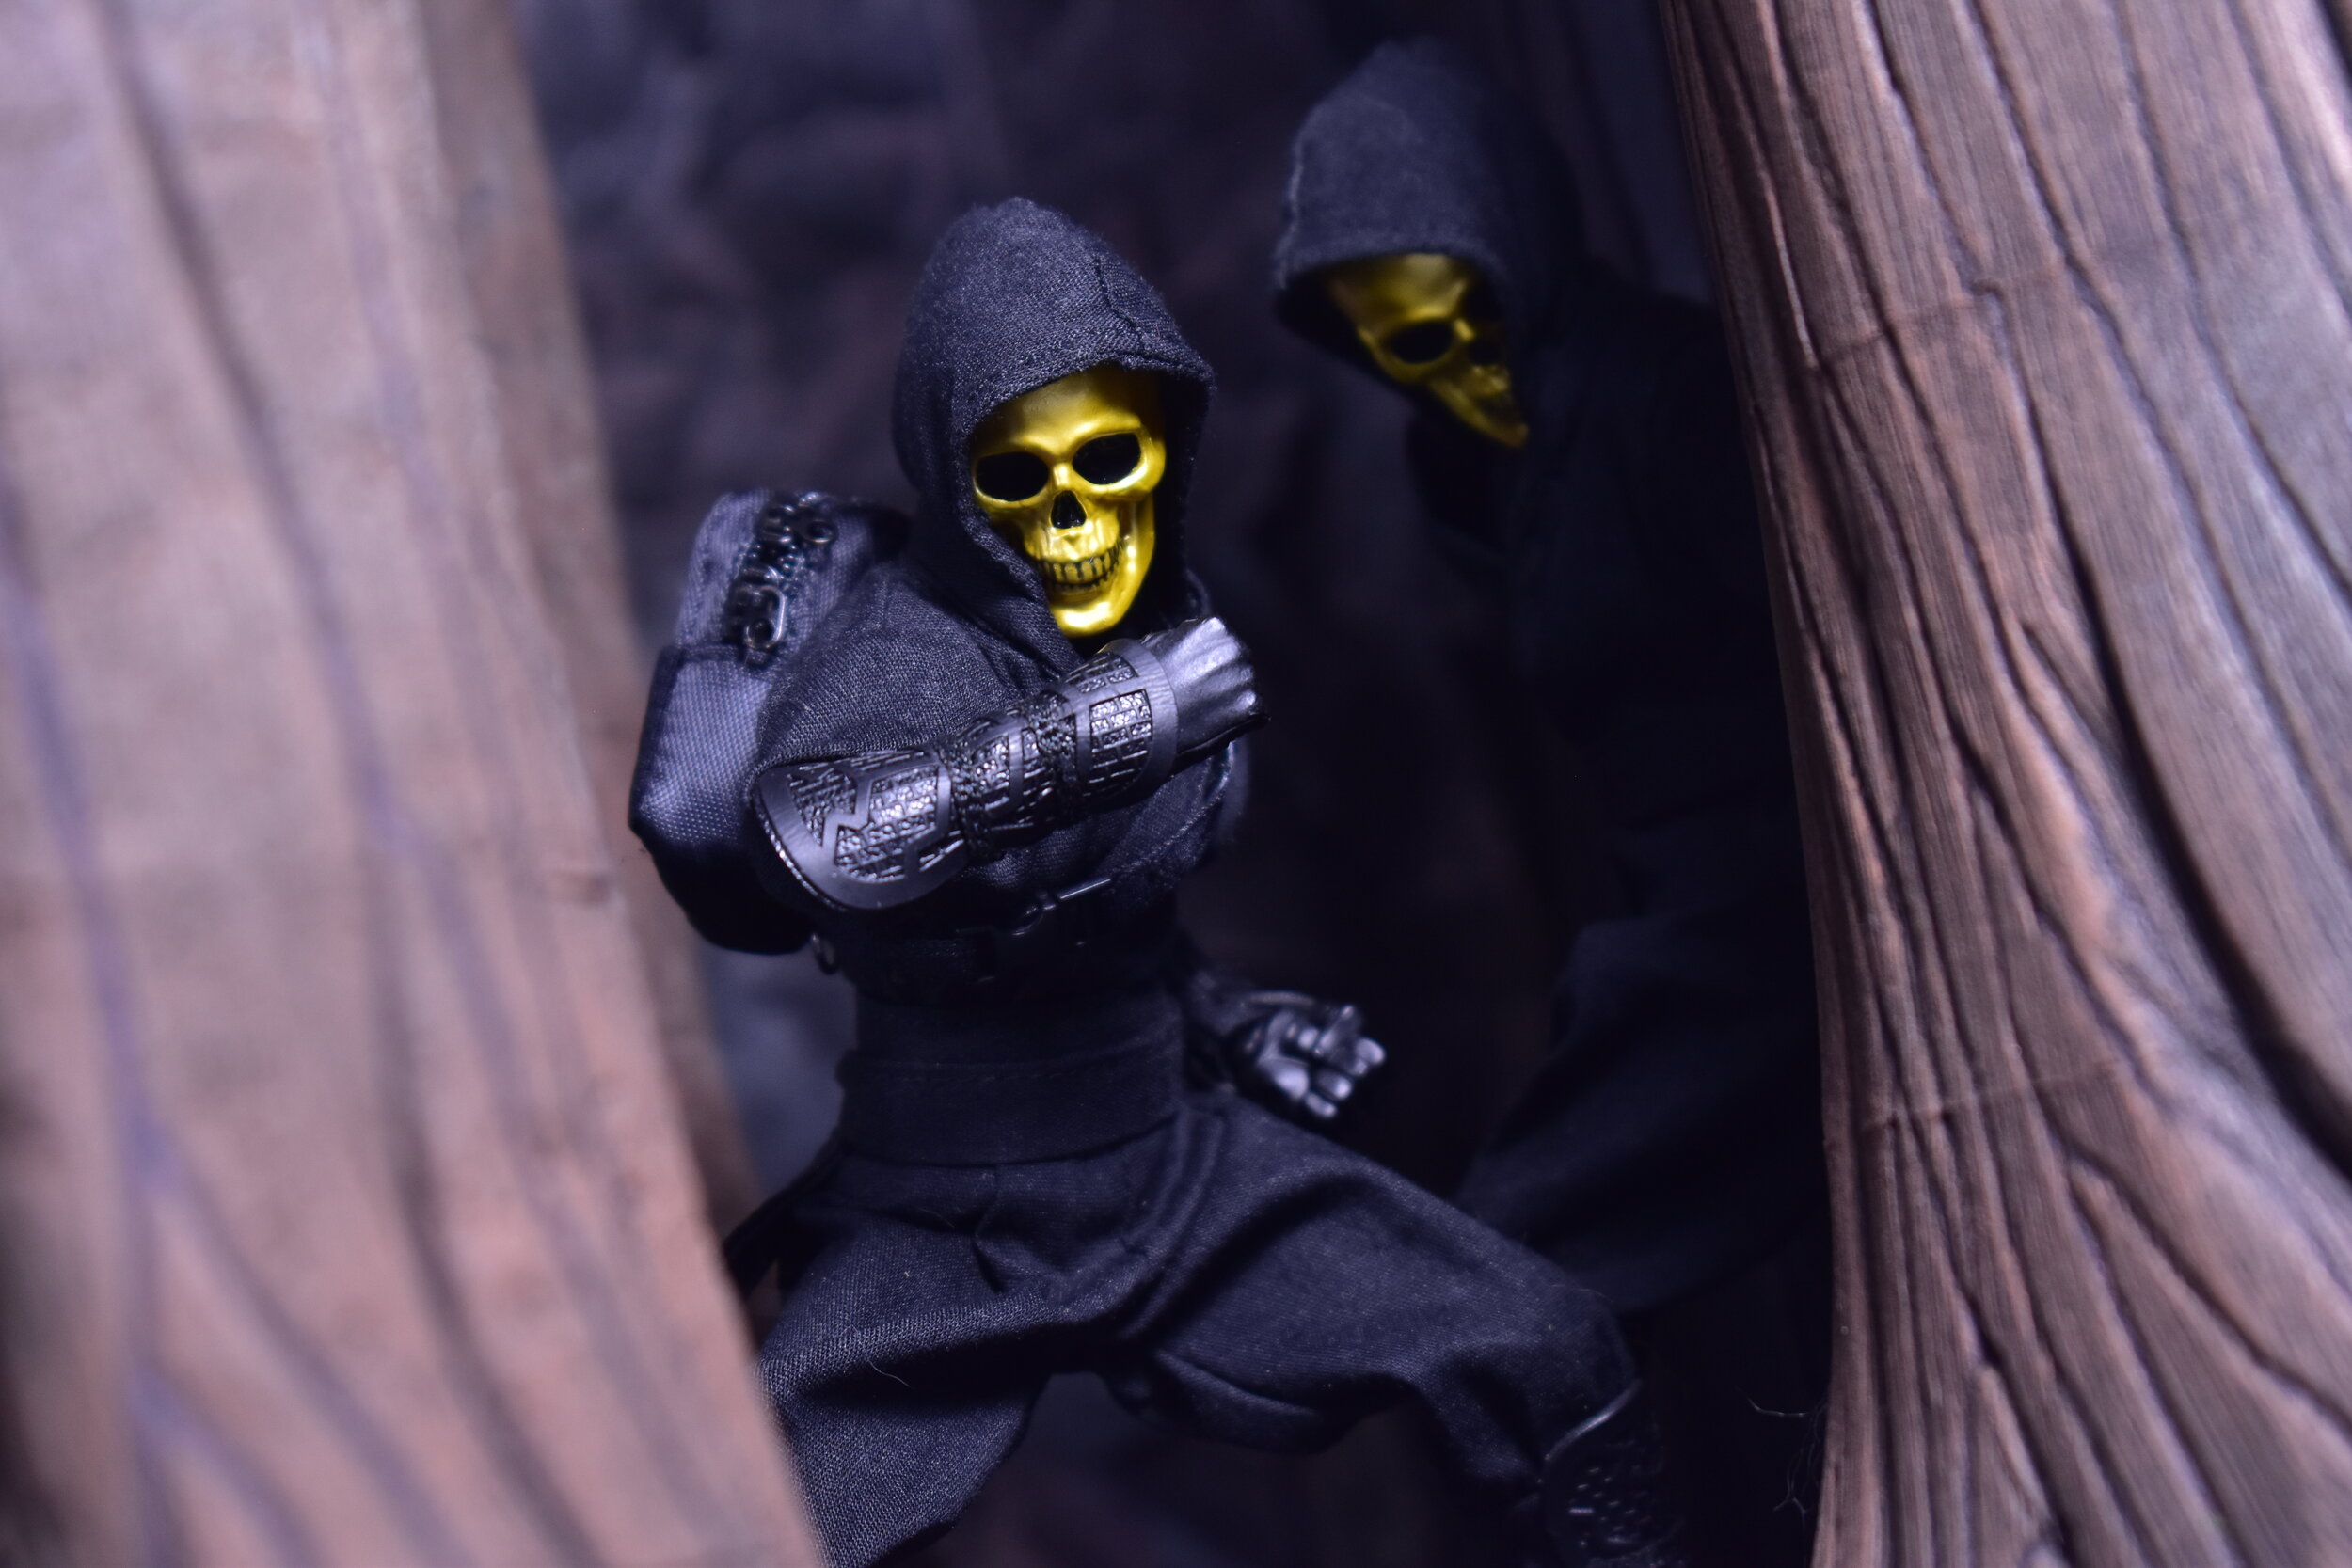 8505円 【人気商品】 最終価格Mezco ONE:12 Gold Skull Ninja 一部欠品